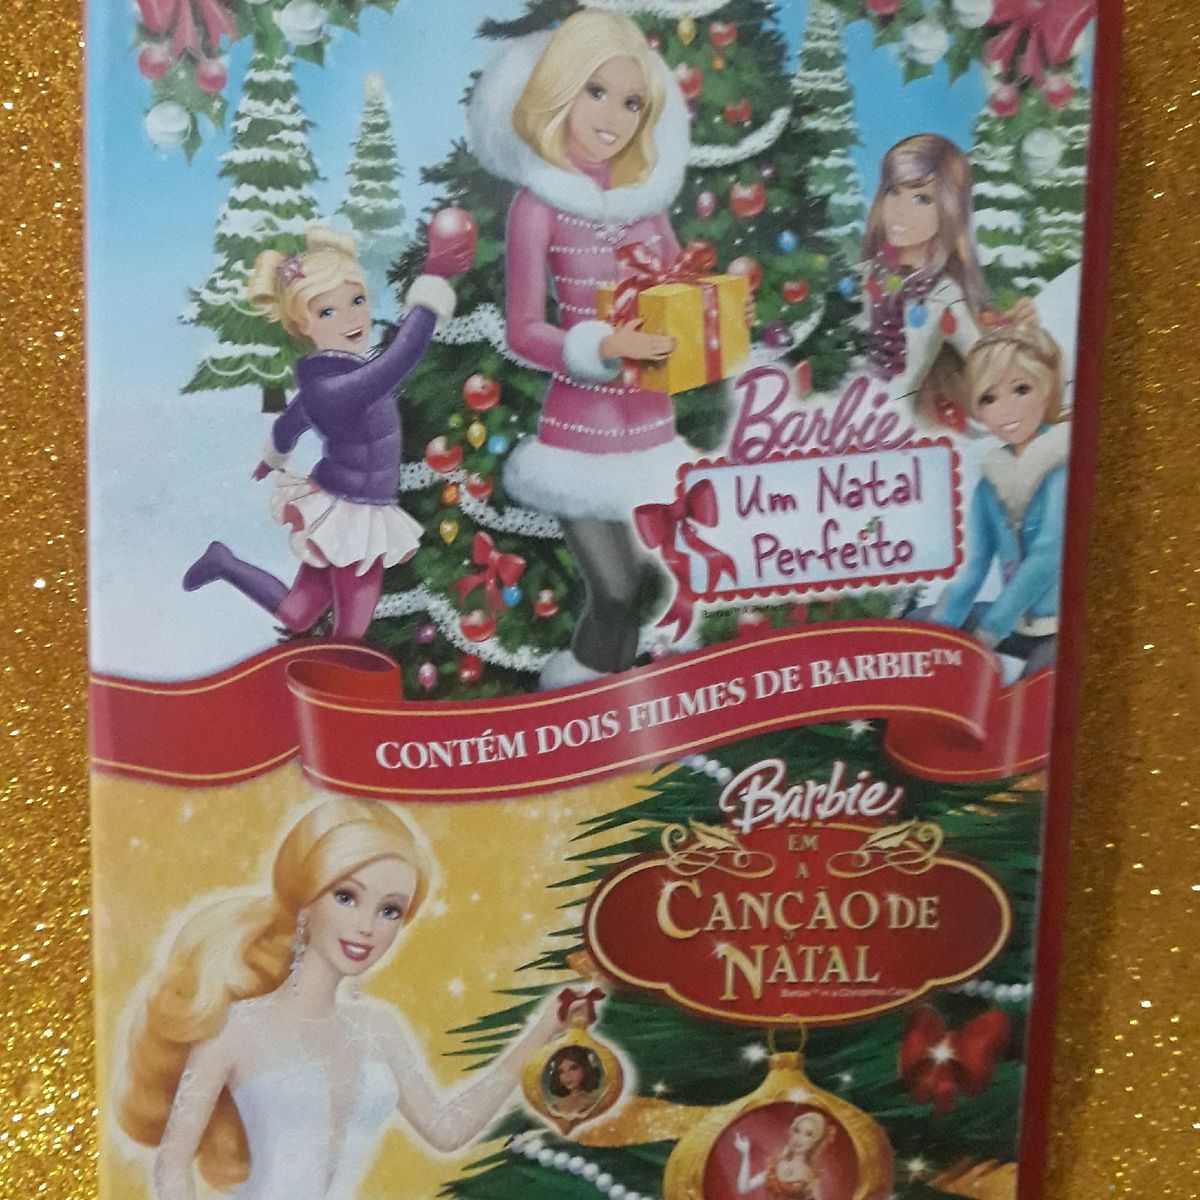 Dvd Barbie a Canção de Natal e Um Natal Perfeito | Filme e Série Barbie- Natal Usado 70229162 | enjoei